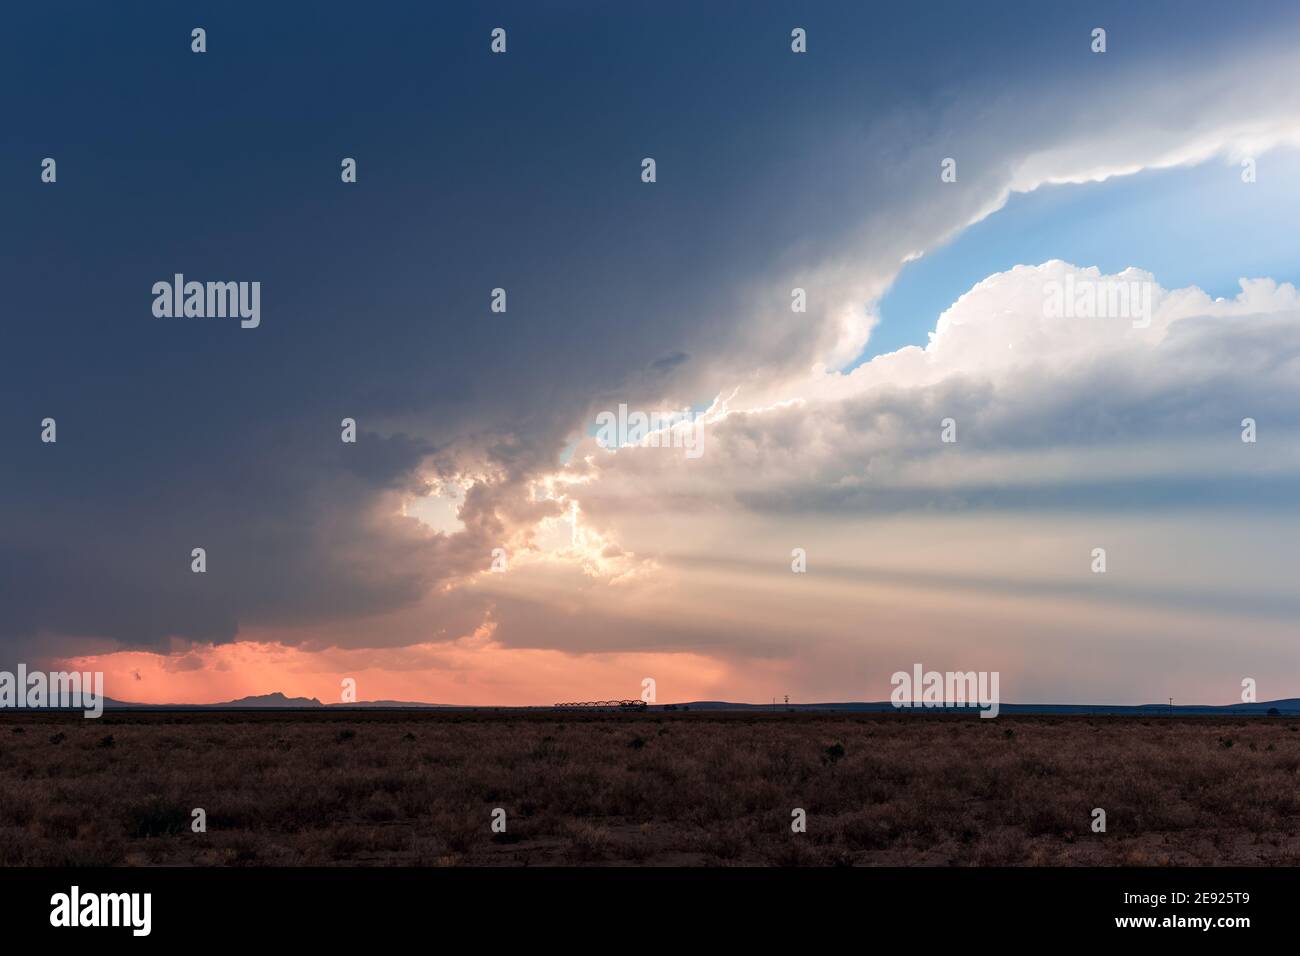 Rayos crepusculares brillando a través de nubes oscuras de tormenta al atardecer en el desierto cerca de la ciudad de Dell, Texas Foto de stock